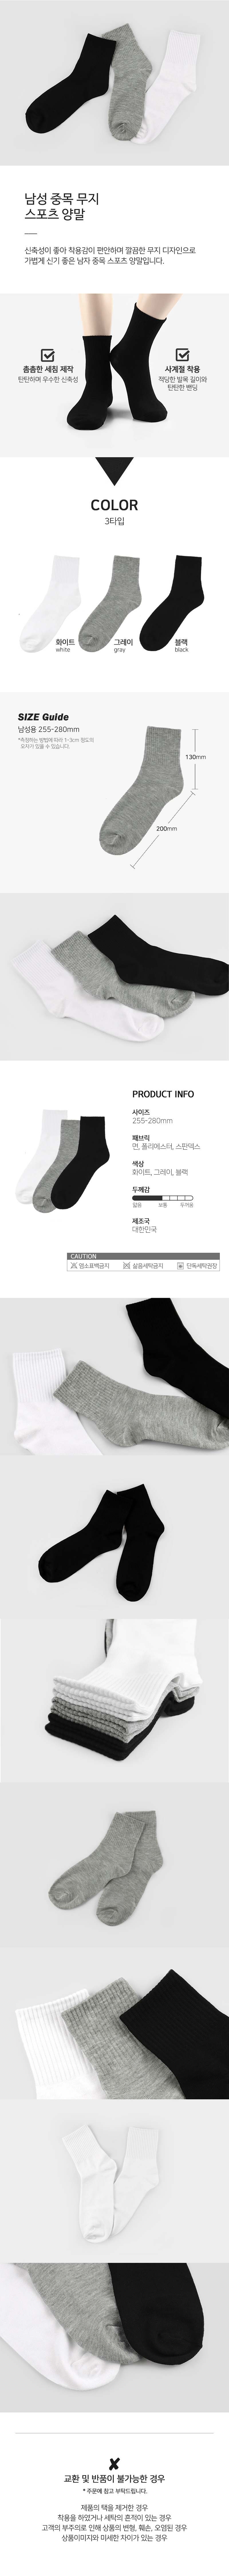 socks_00070.jpg